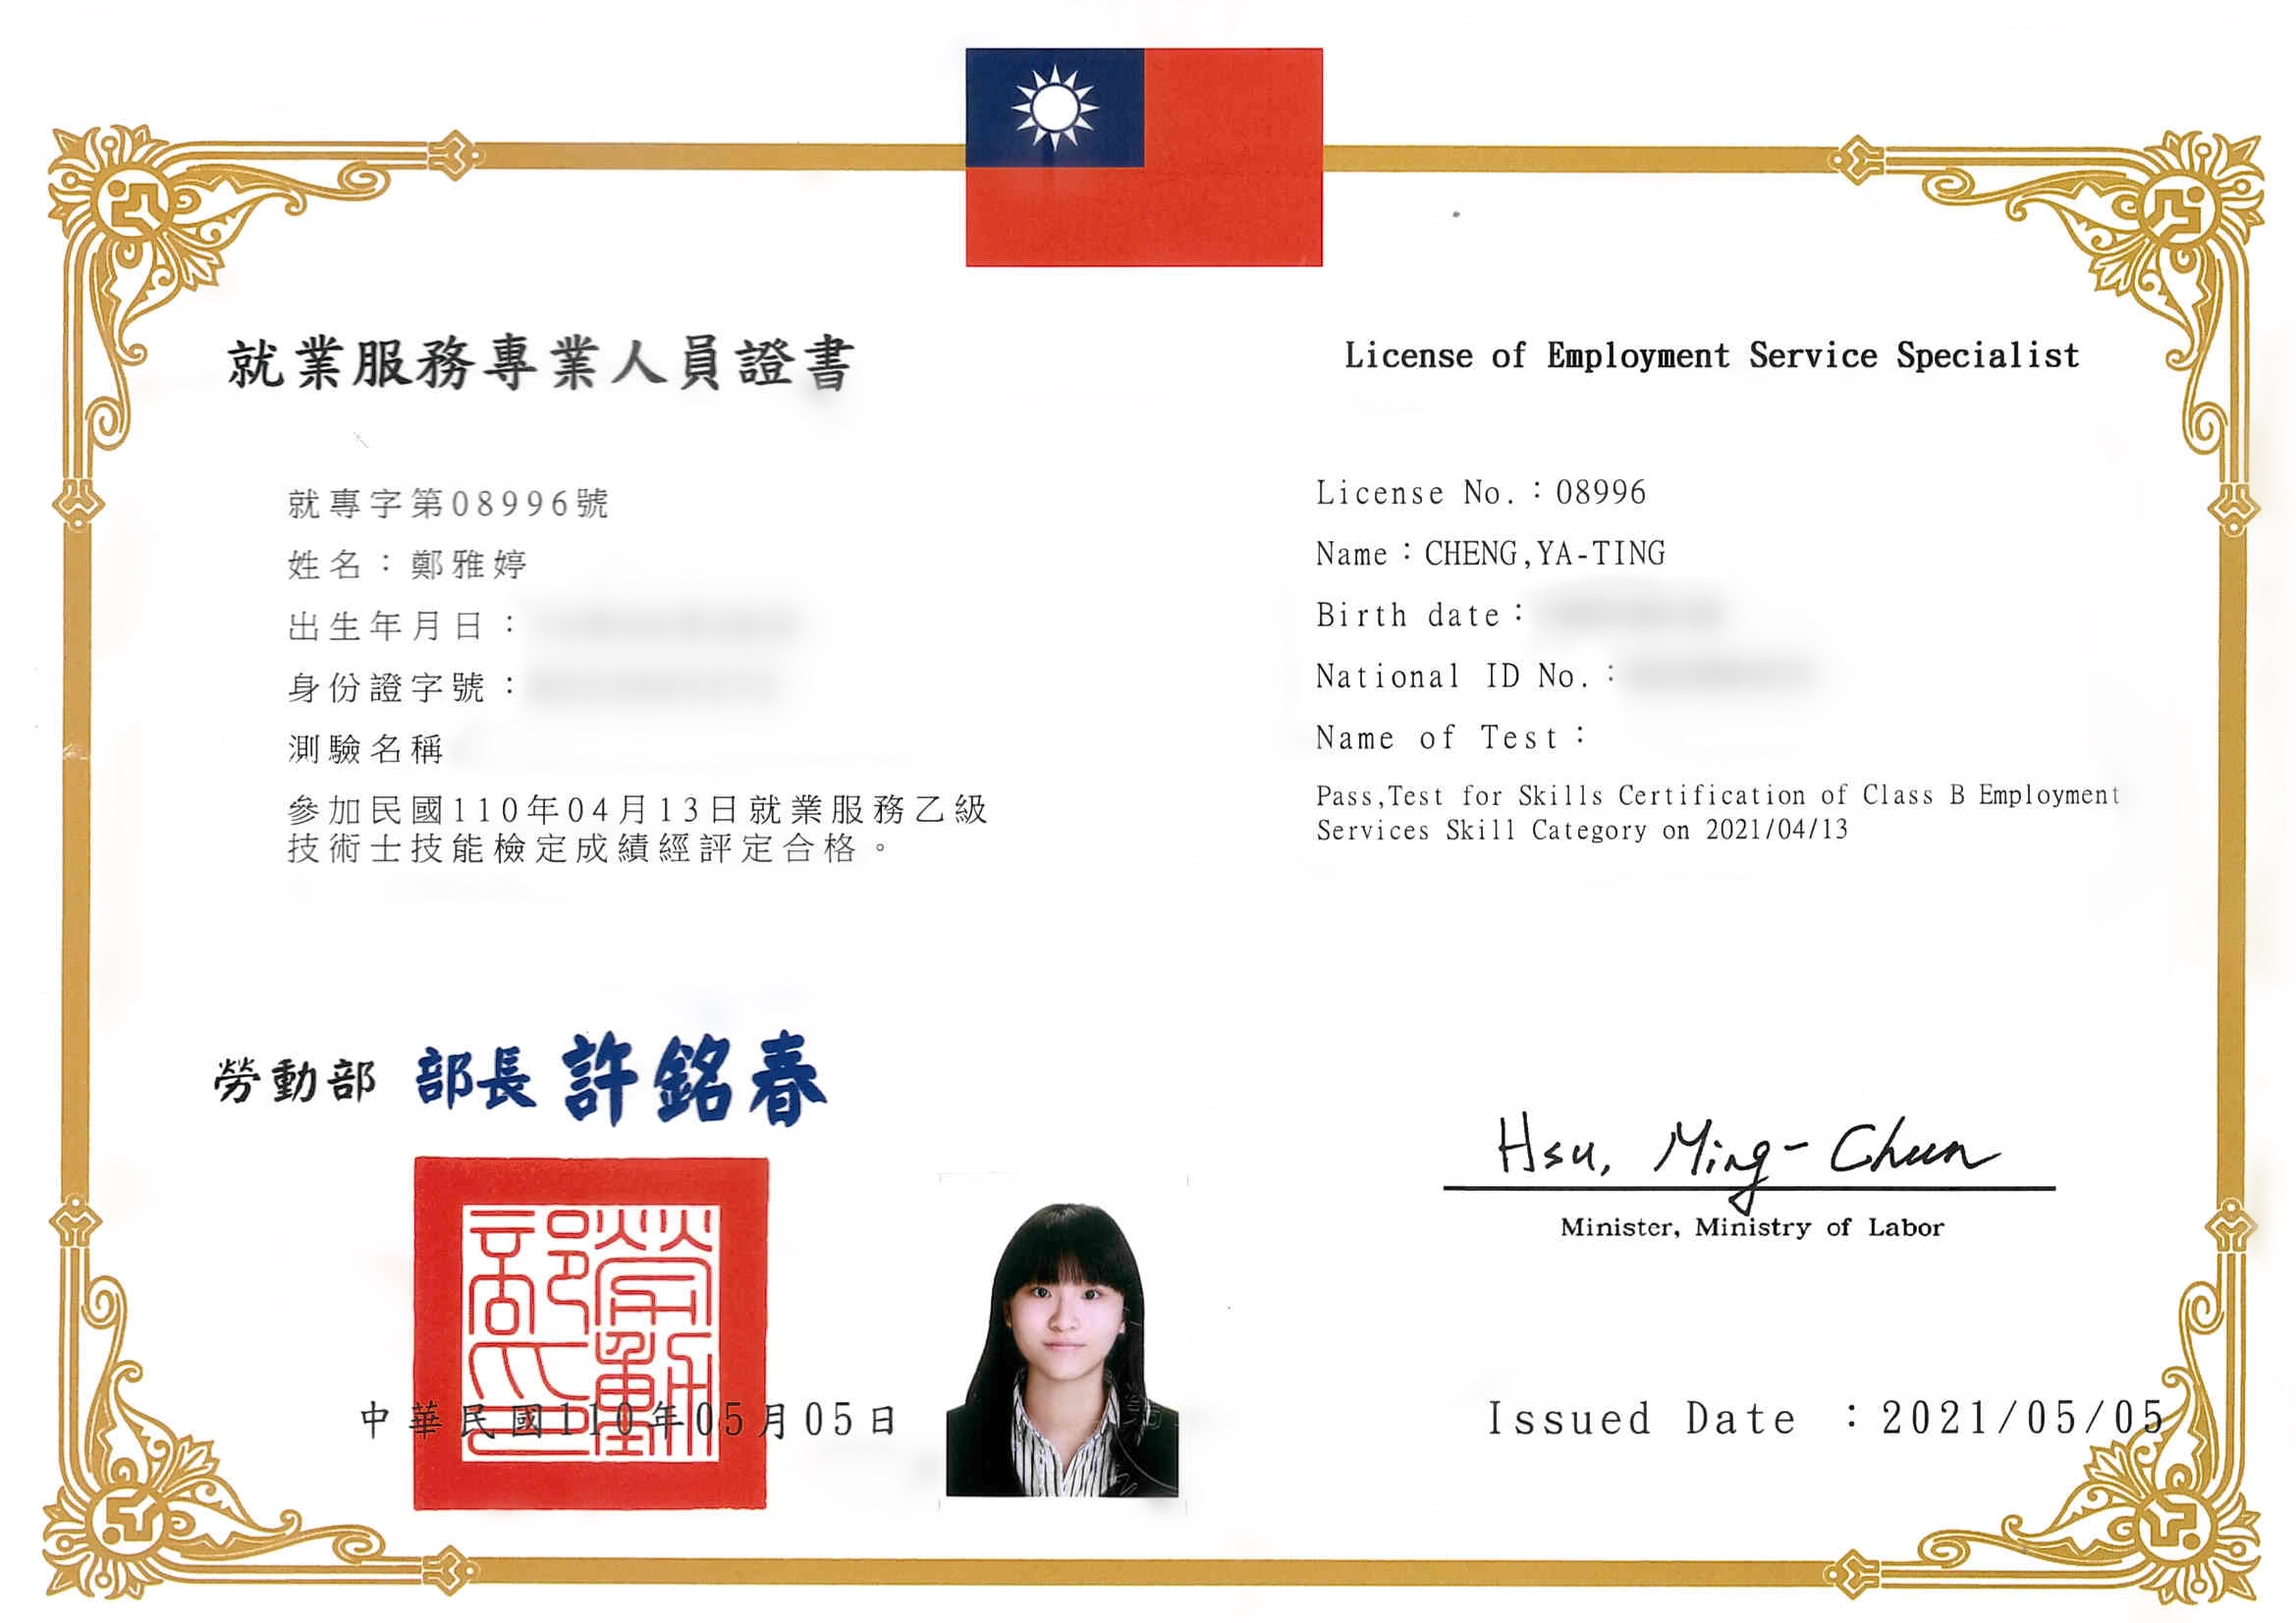 鄭雅婷-乙級就業服務士證照